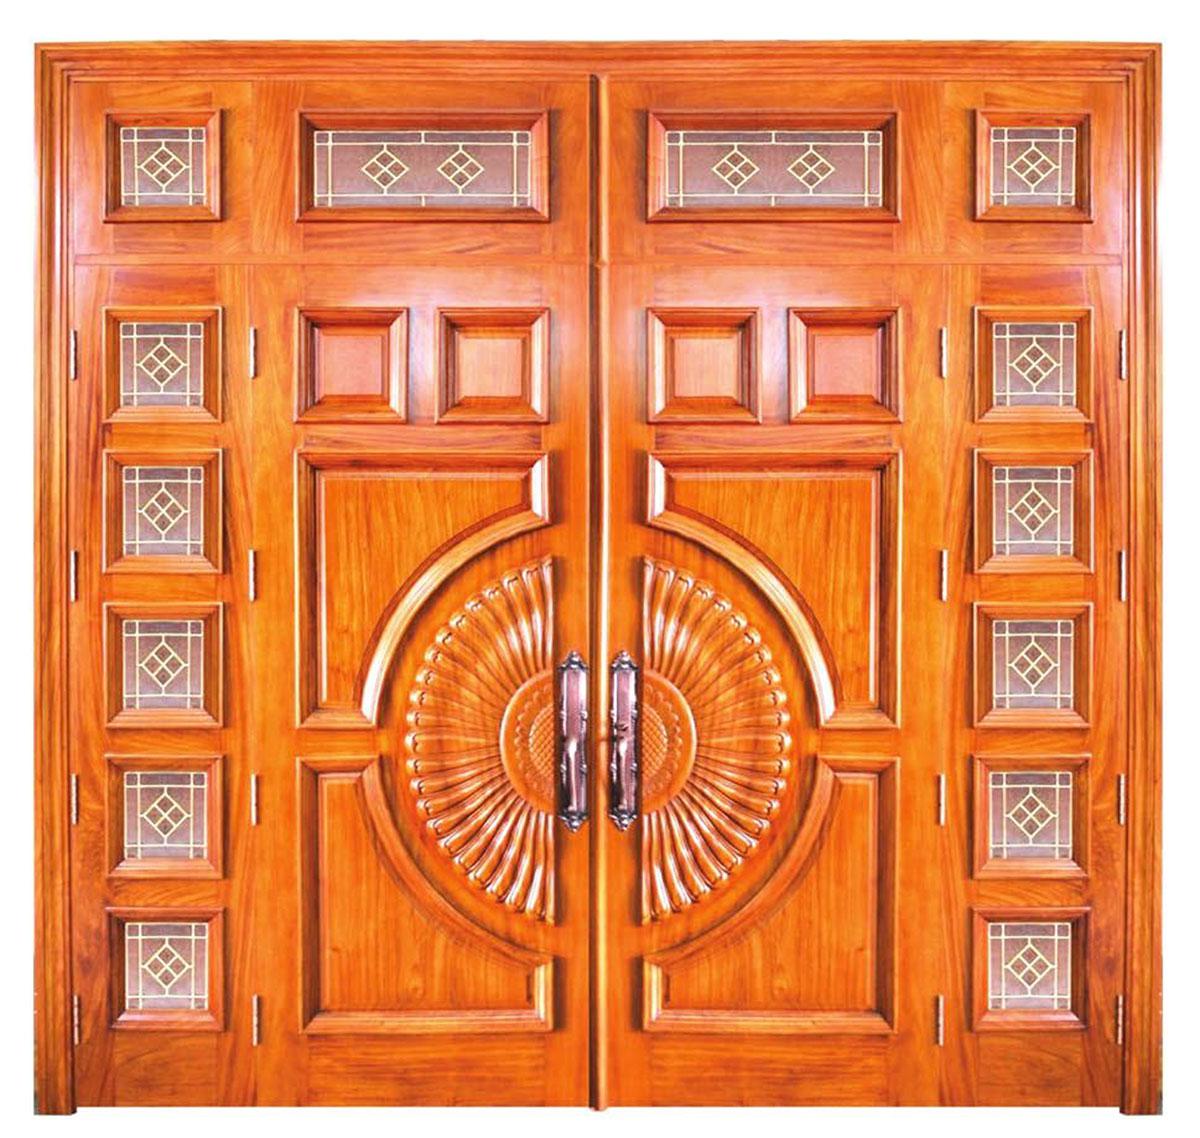 Hãy cùng chiêm ngưỡng độc đáo và đẹp mắt của cửa gỗ 4 cánh, tạo nét riêng cho căn phòng của bạn.